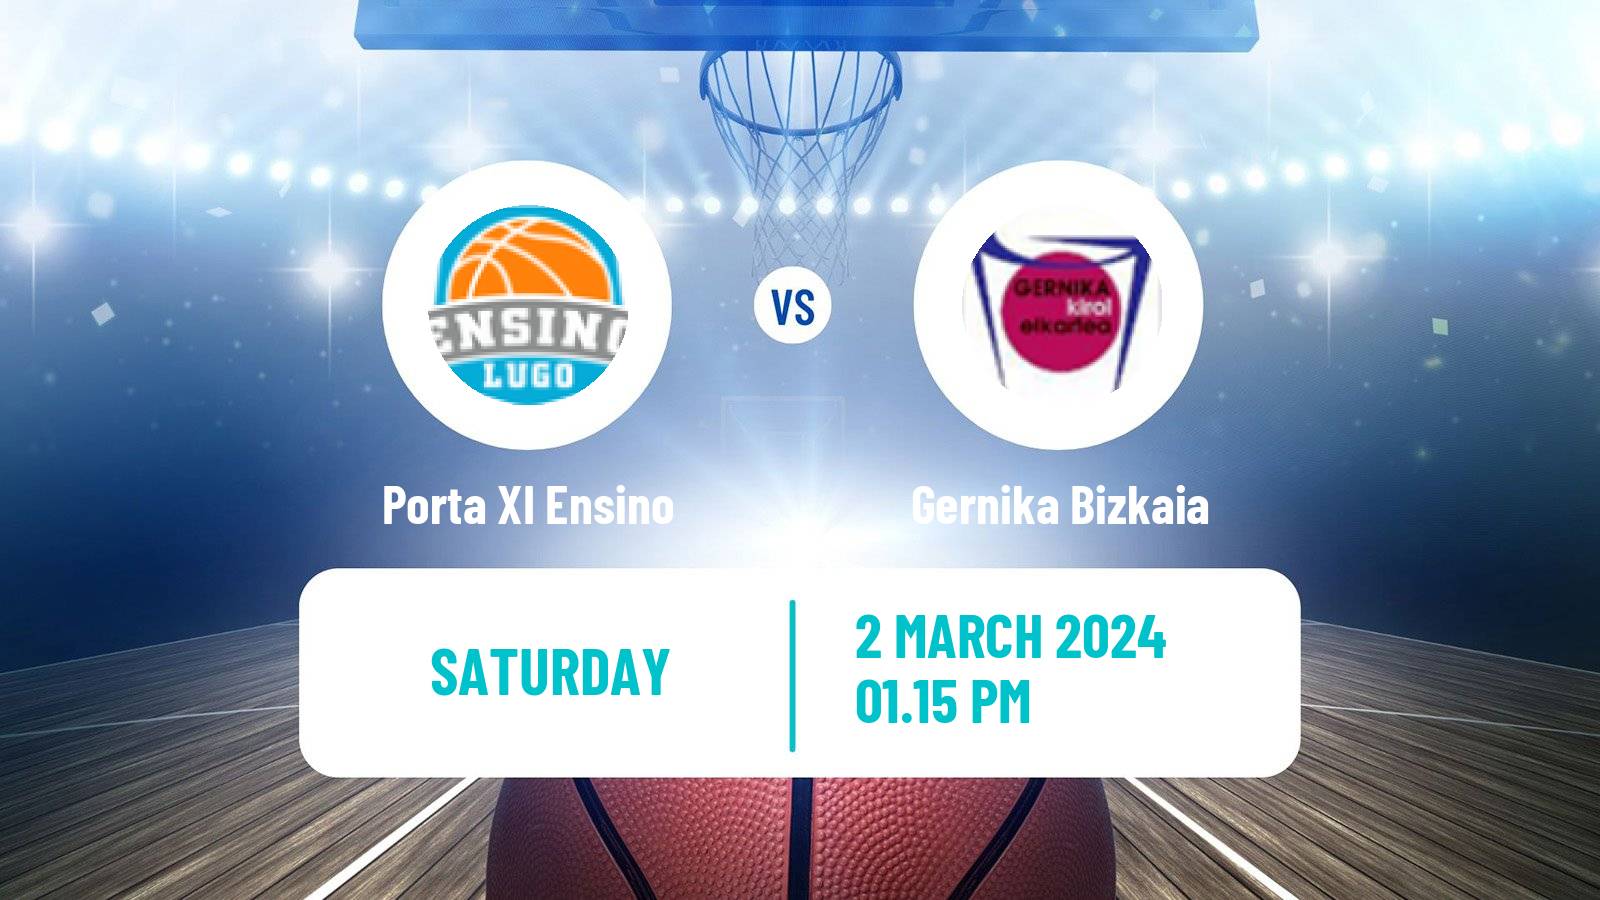 Basketball Spanish Liga Femenina Basketball Porta XI Ensino - Gernika Bizkaia